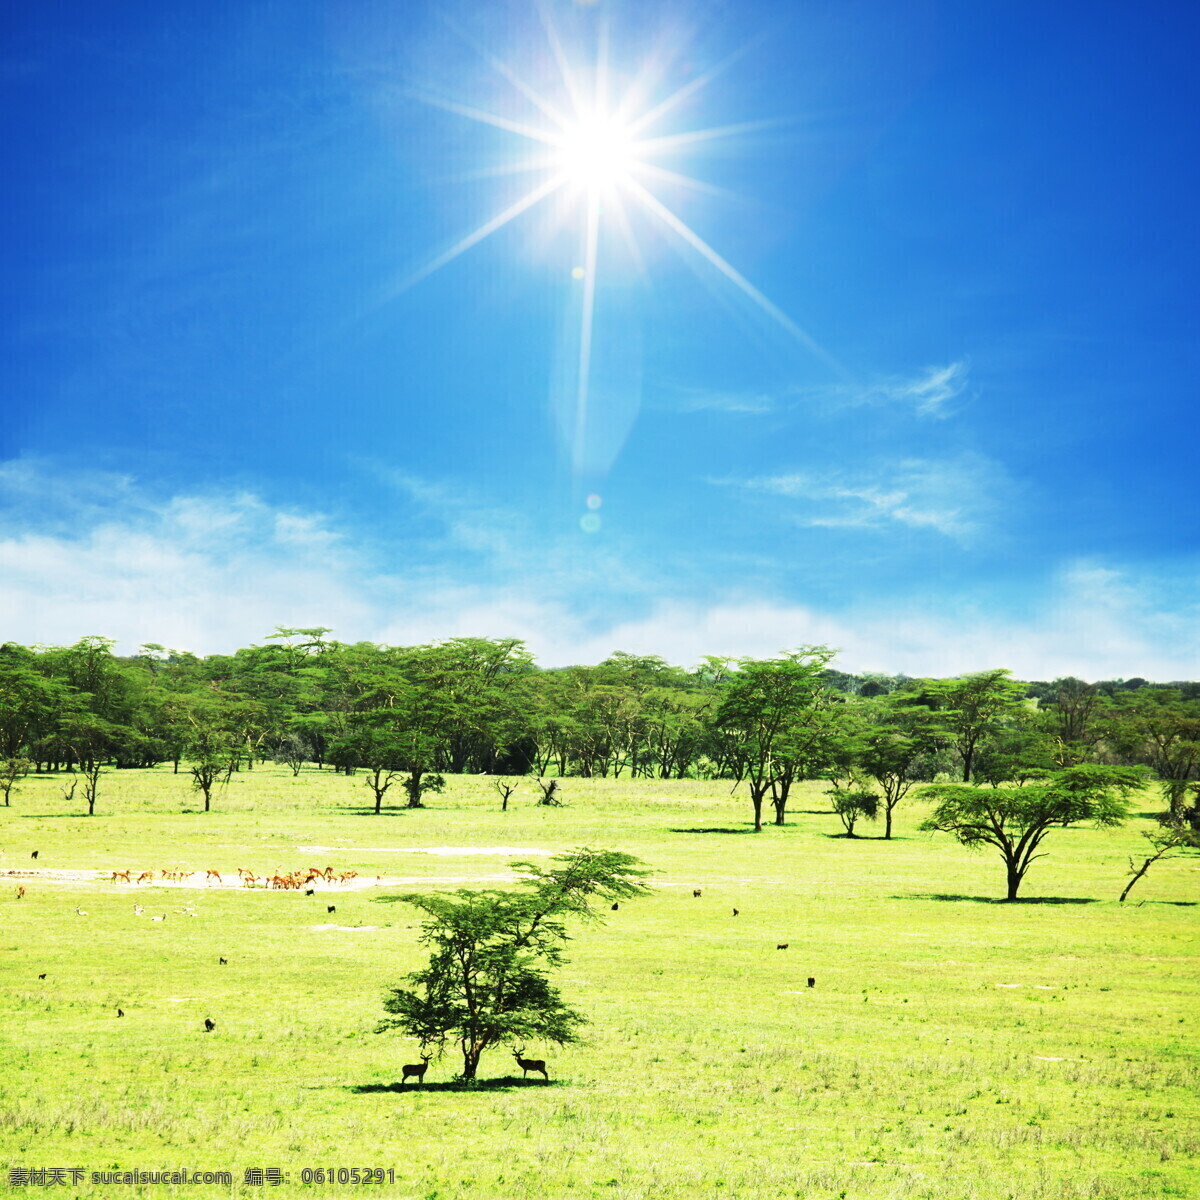 非洲 草原 风景 美丽风景 非洲草原 草地 平原 树木 鲜花 蓝天白云 阳光 太阳 自然风景 摄影图库 高清图片 草原图片 风景图片